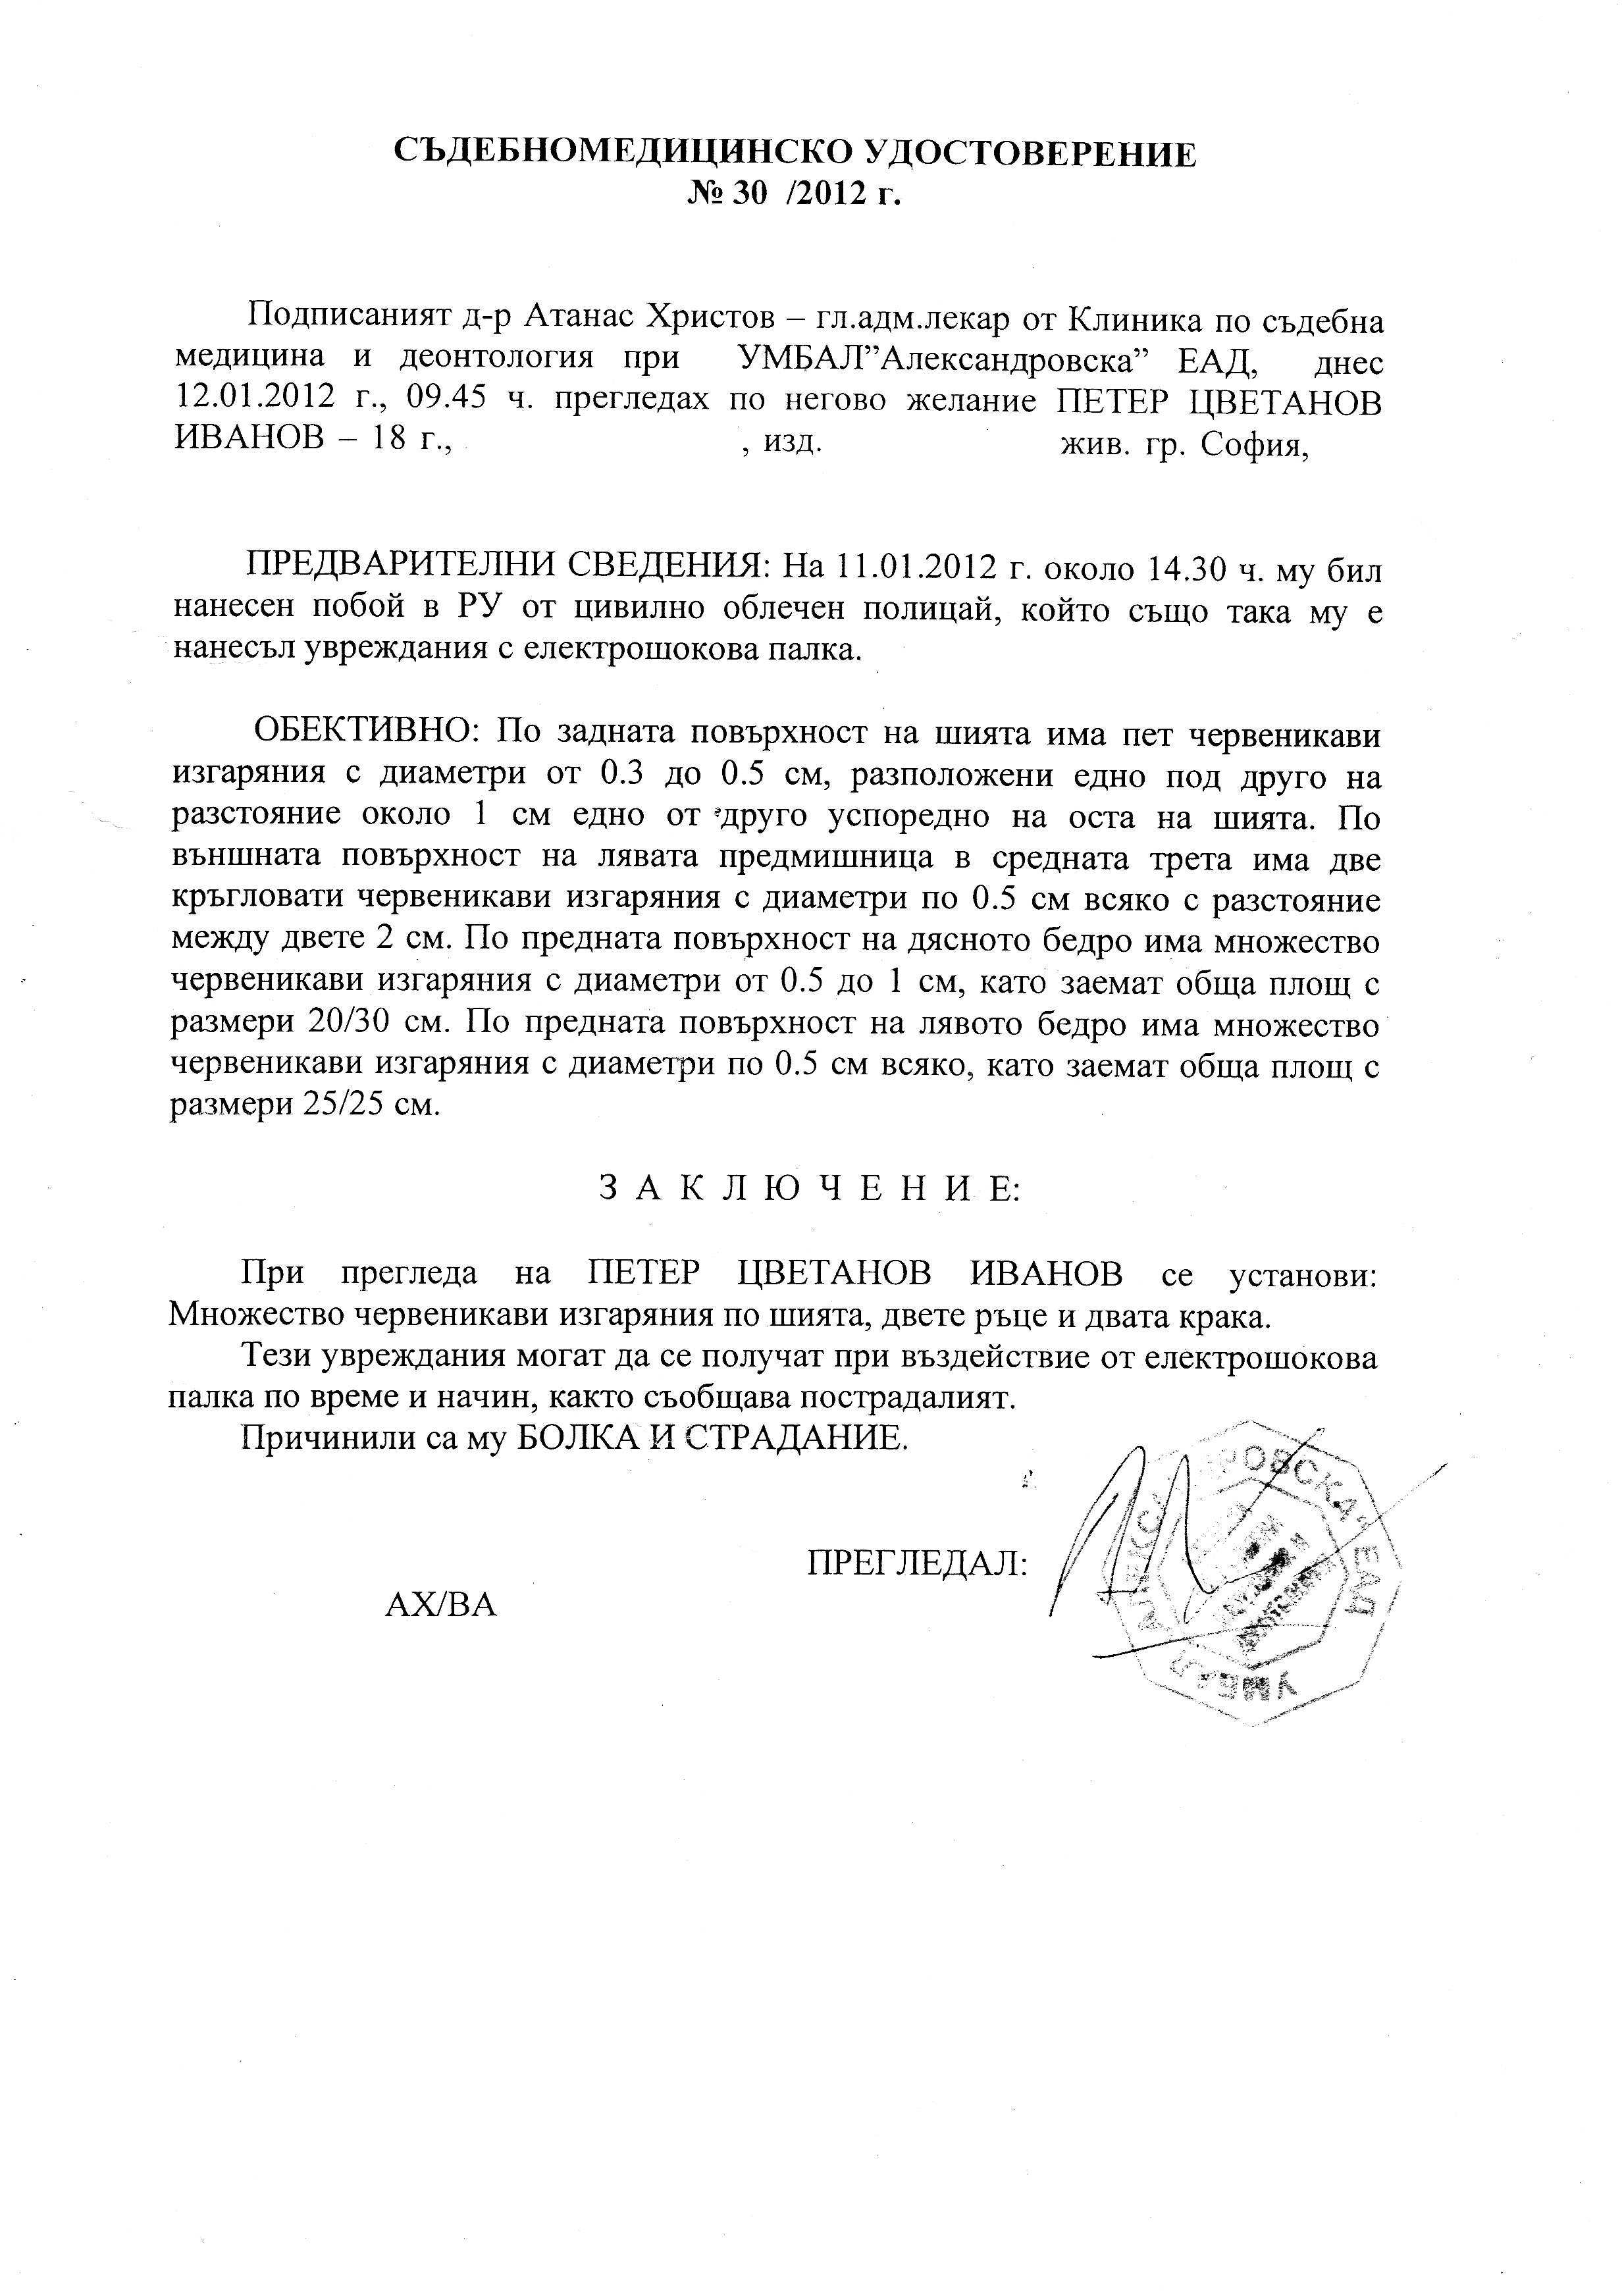 Удостоверението от Съдебна медицина за Петер Иванов